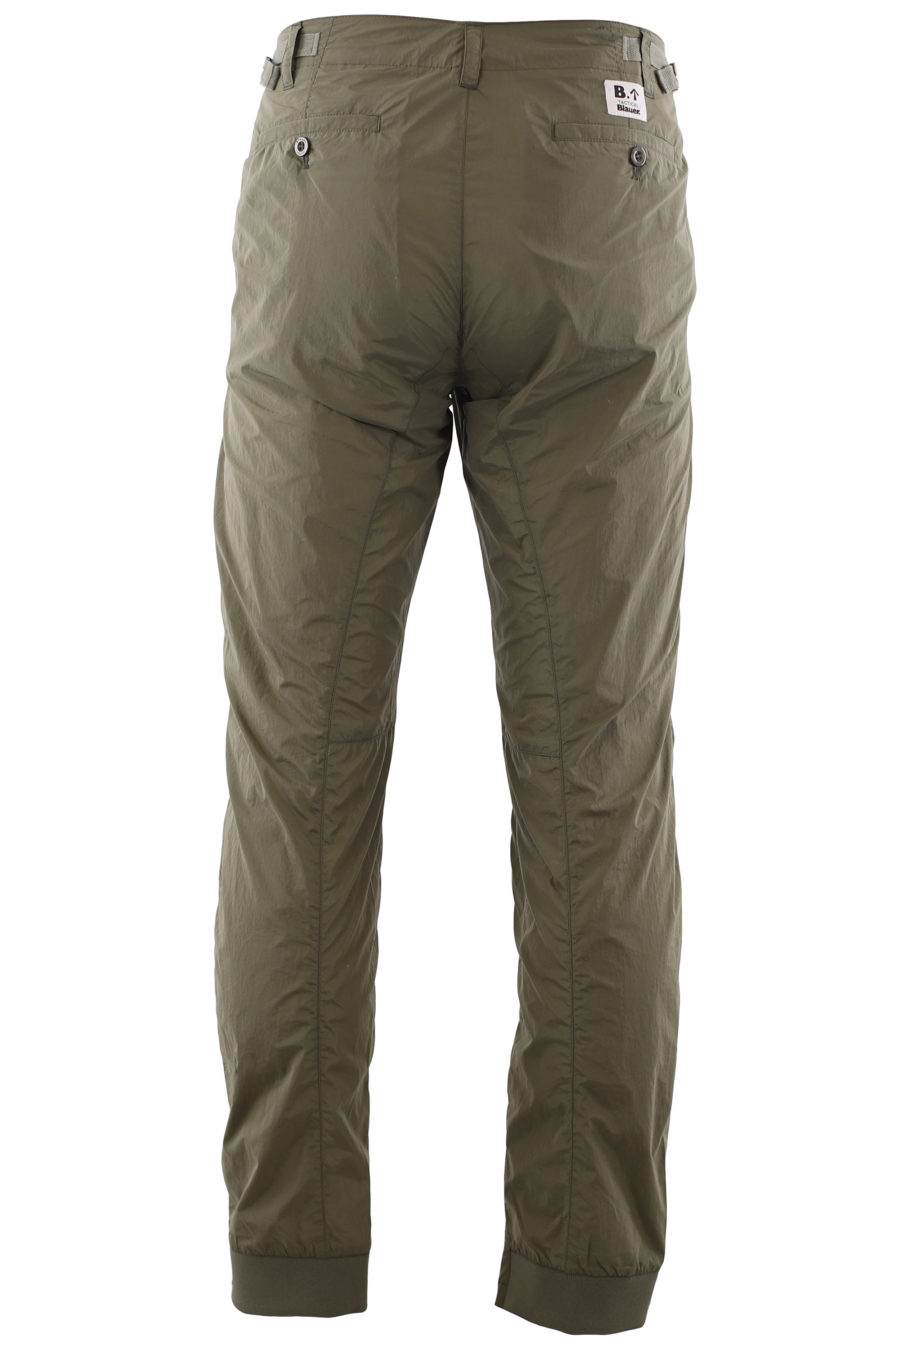 Pantalon long "tactique" vert militaire - IMG 6663